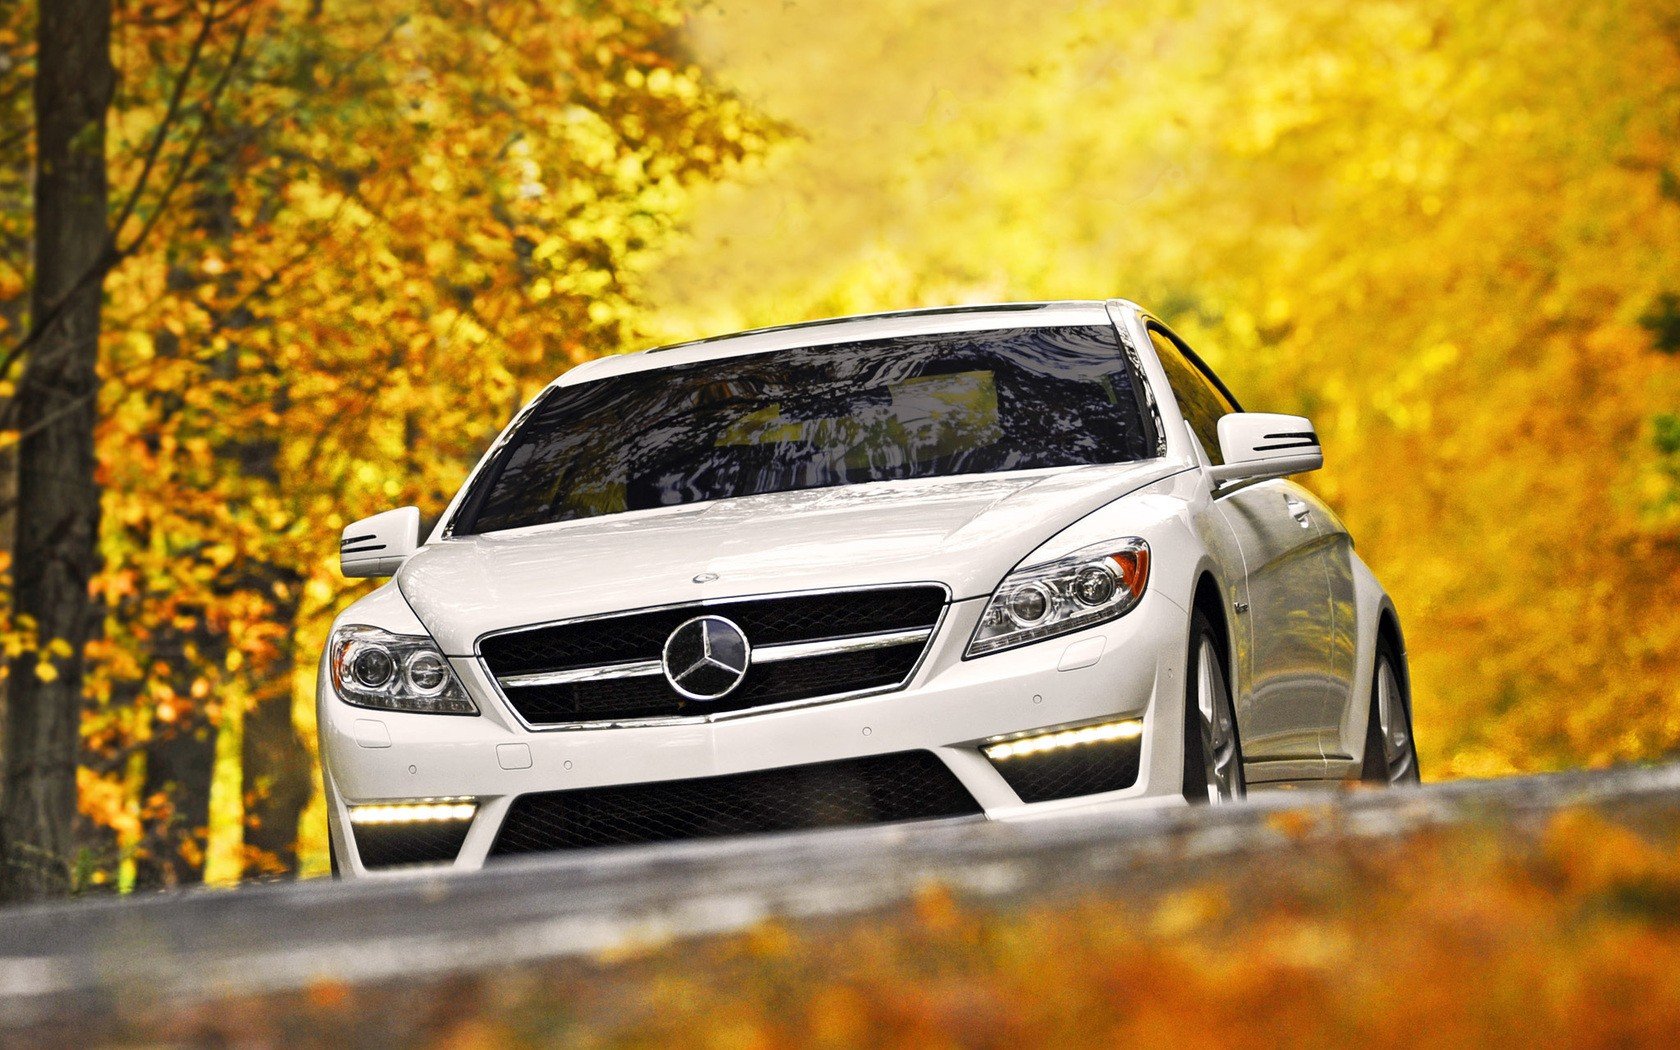 Mercedes Benz Wallpaper Hd Download